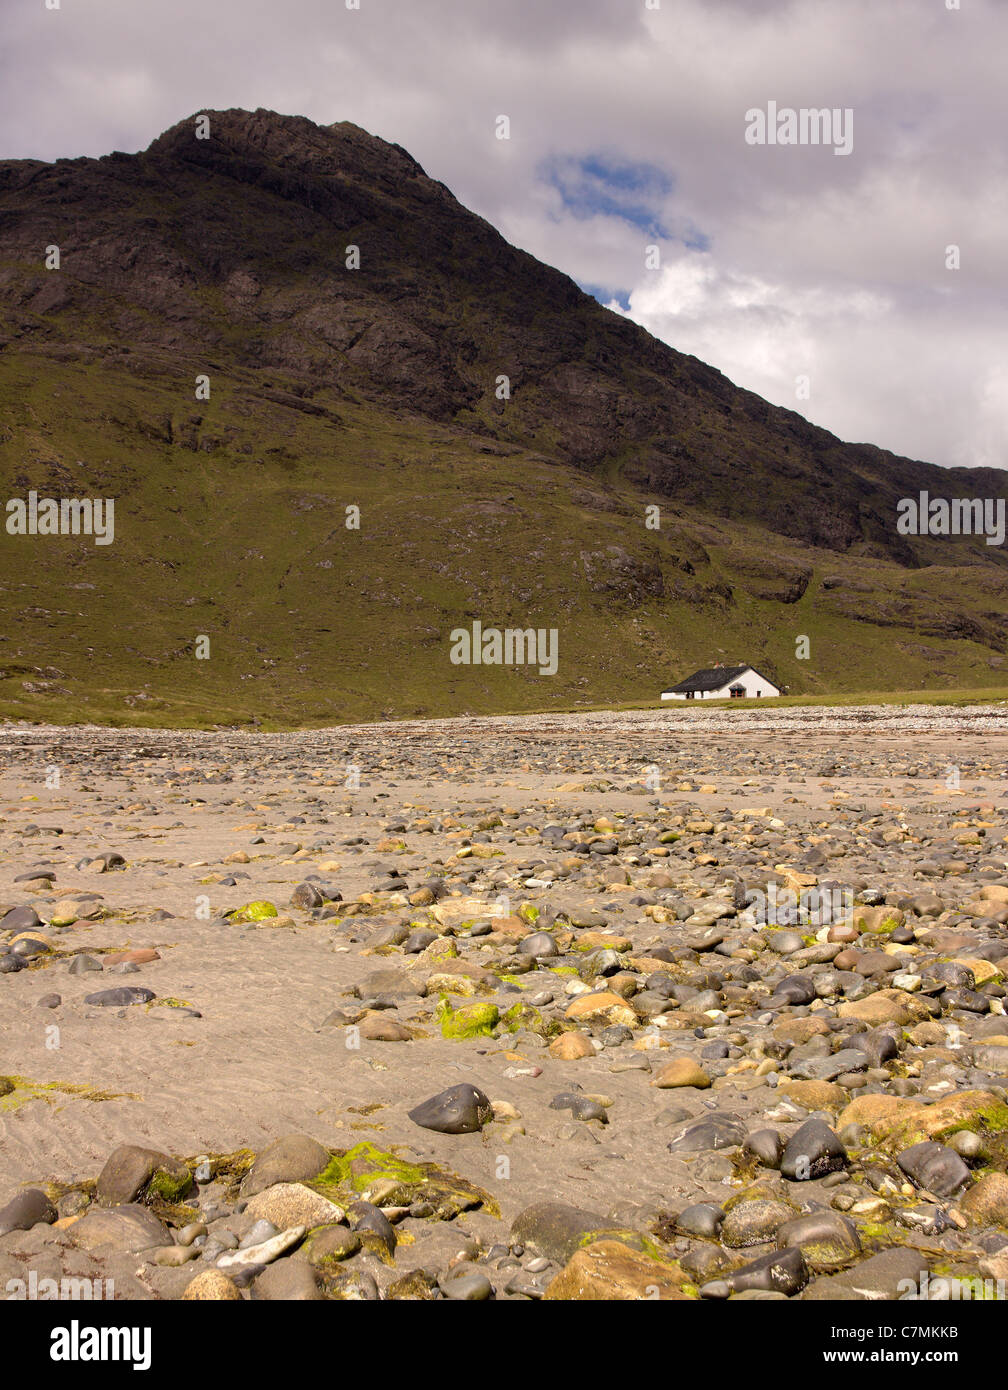 Vieux marcheurs isolés en terre avec Sgurr na STRI montagne derrière, Camasunary Bay, île de Skye, Écosse, Royaume-Uni Banque D'Images